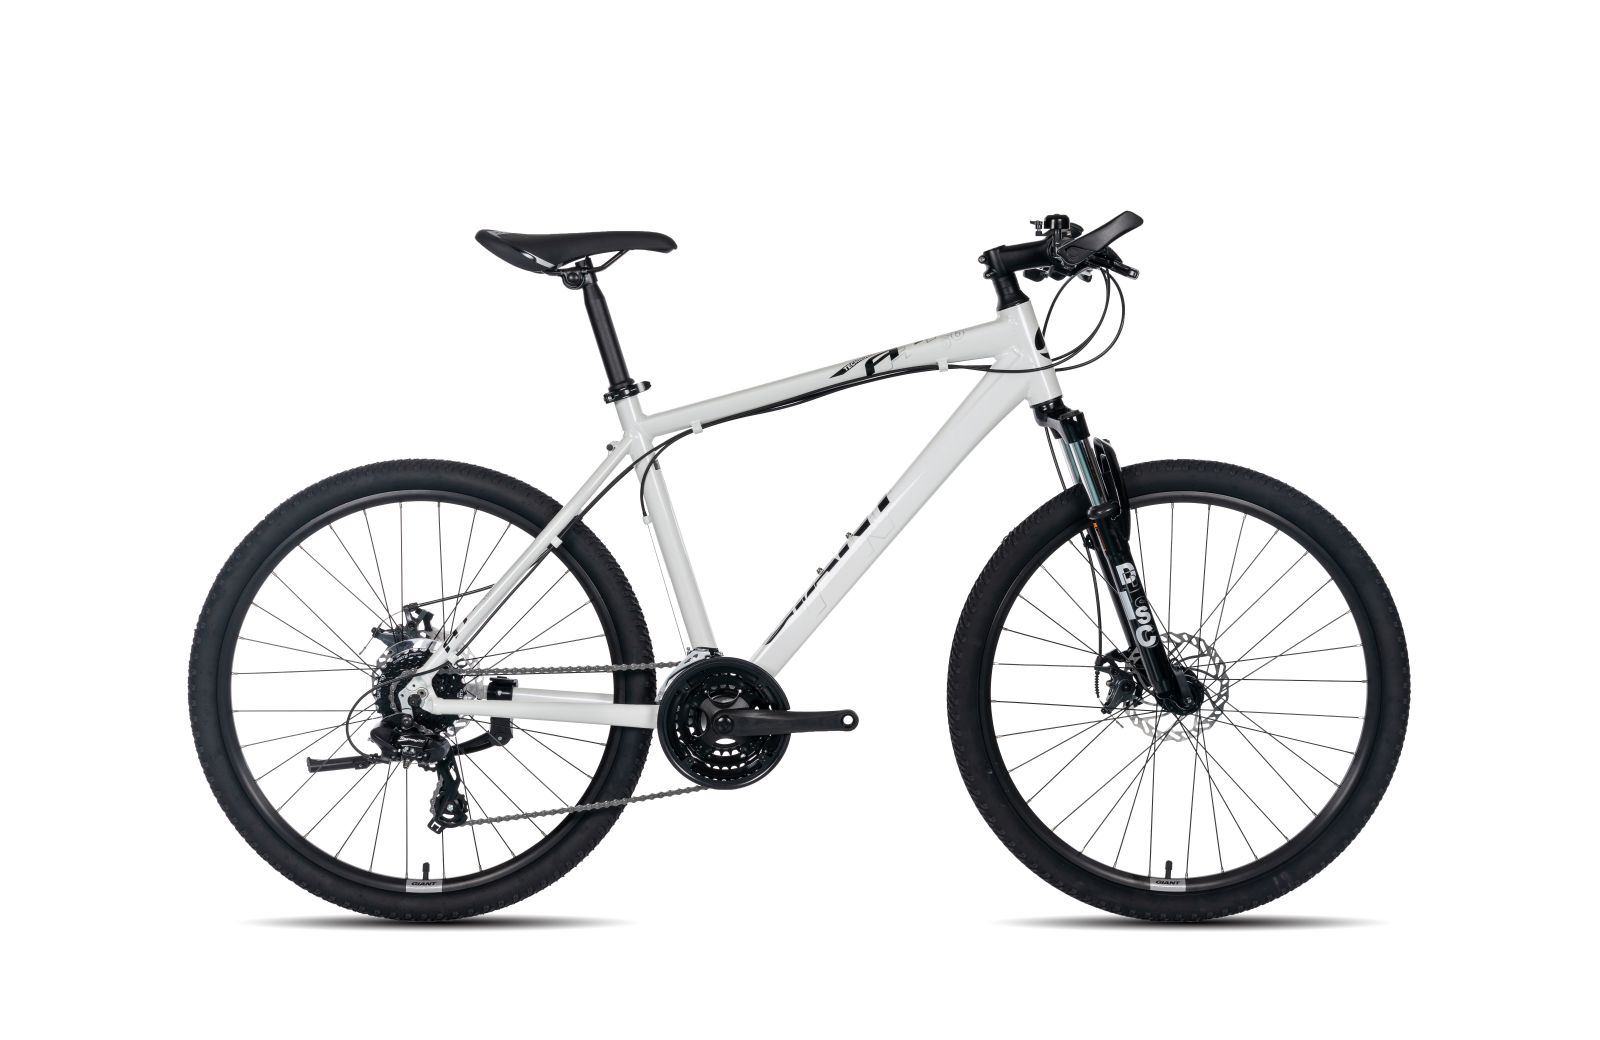 Xe đạp thể thao GIANT ATX 660 2020 Trắng